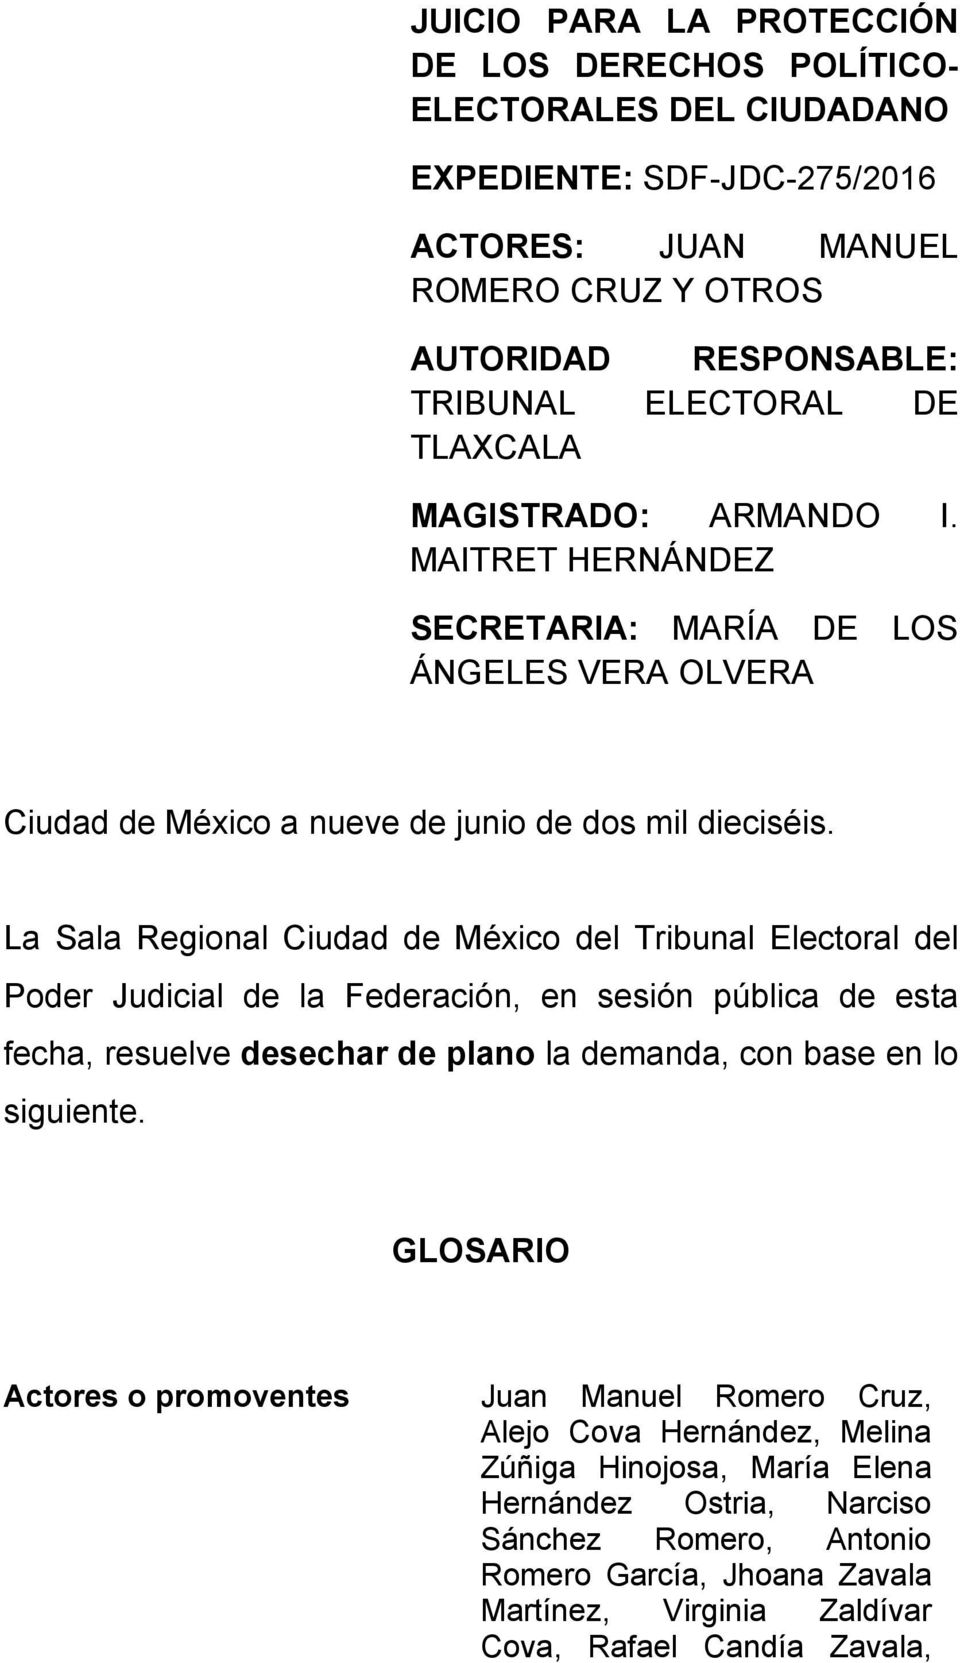 La Sala Regional Ciudad de México del Tribunal Electoral del Poder Judicial de la Federación, en sesión pública de esta fecha, resuelve desechar de plano la demanda, con base en lo siguiente.